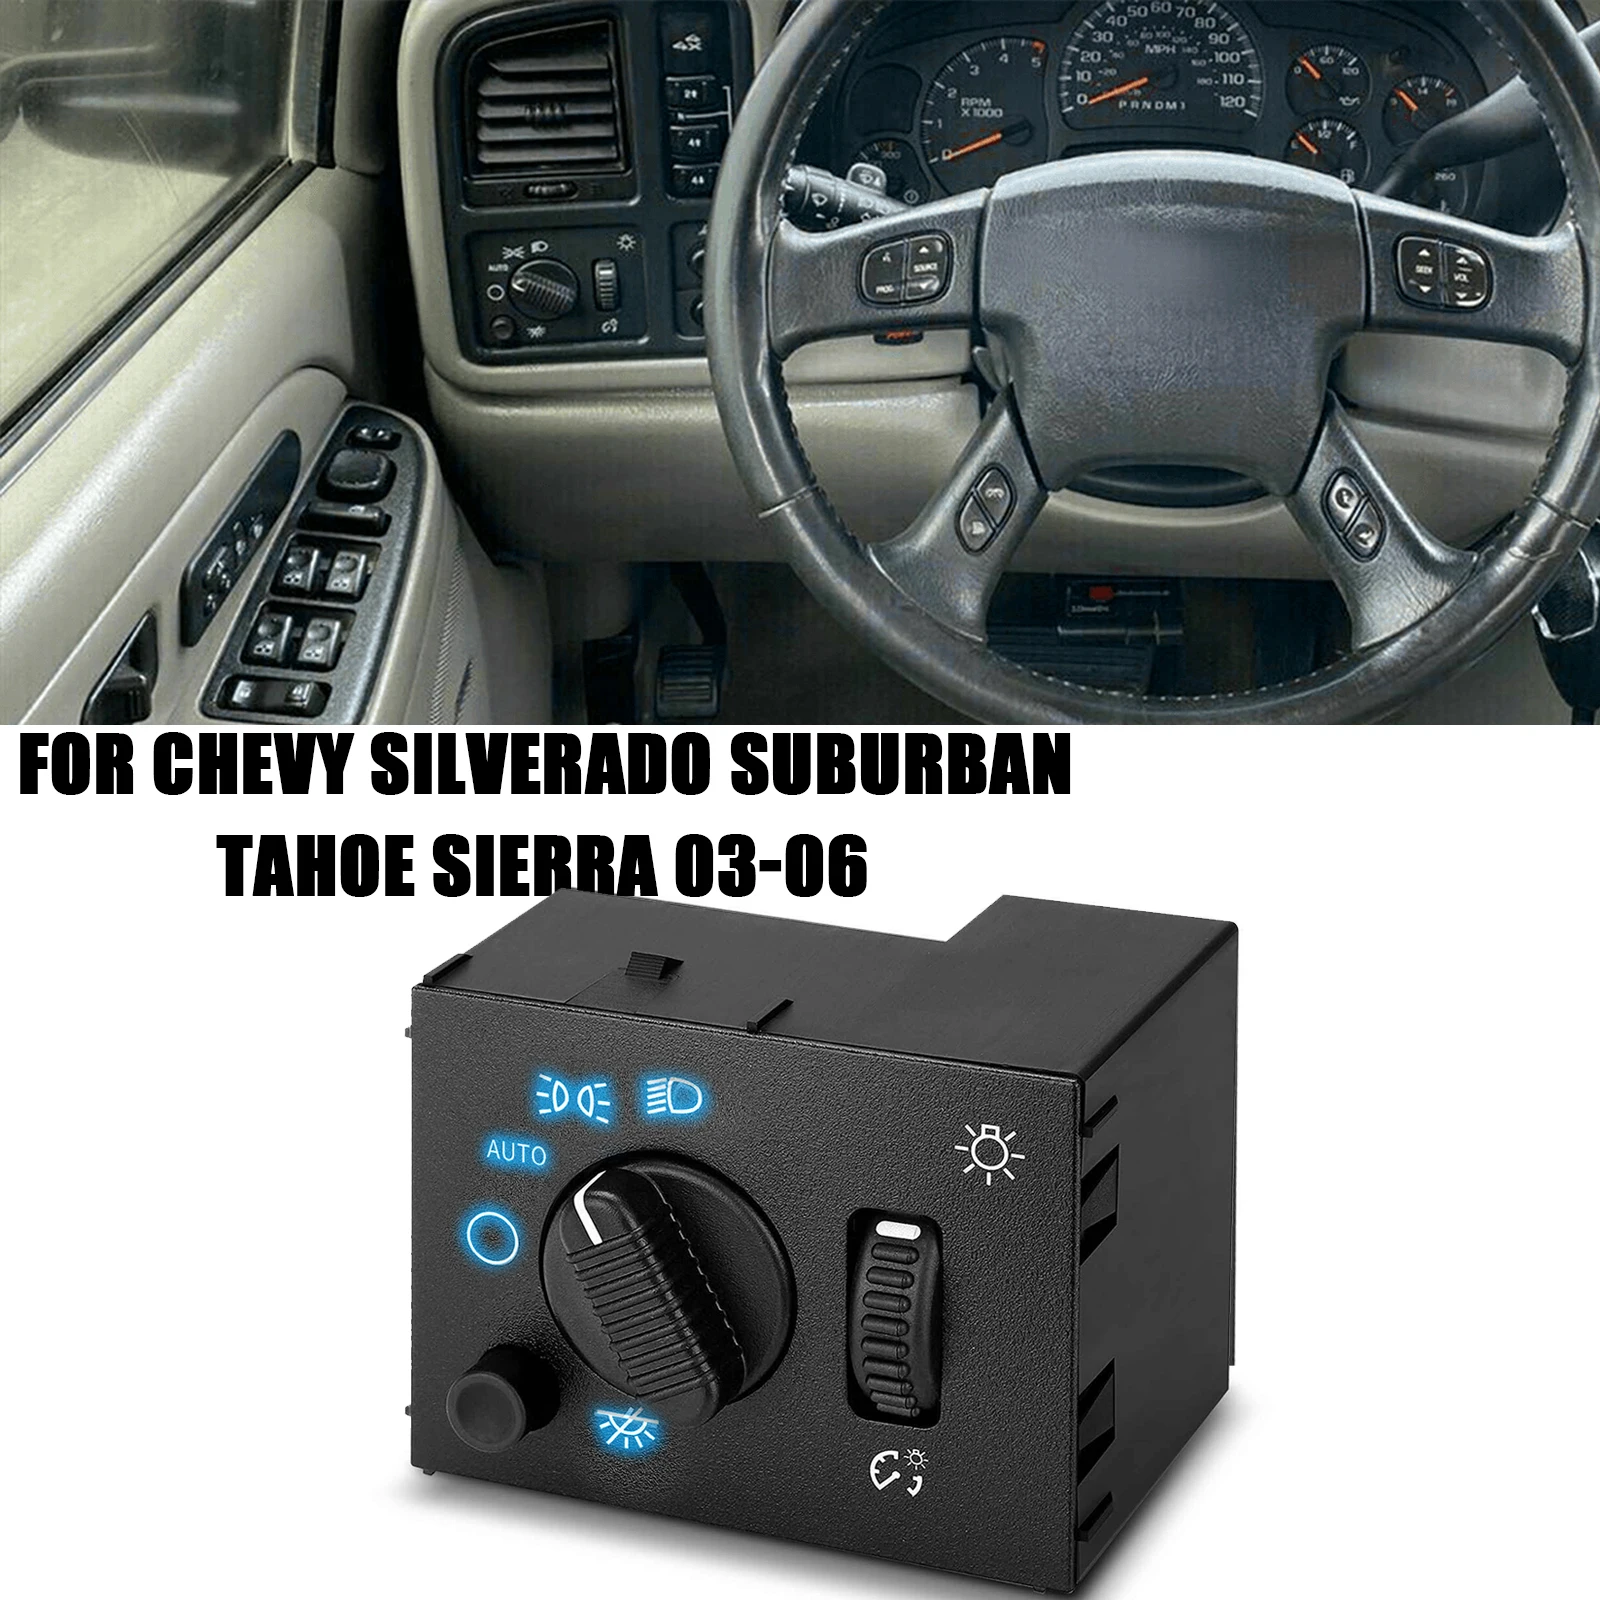 

Выключатель света для 03-06 Chevrolet Silverado, пригородсветильник фара, противотуманная фара, пересветильник ель света, черный, синий индикатор, автомобильные аксессуары